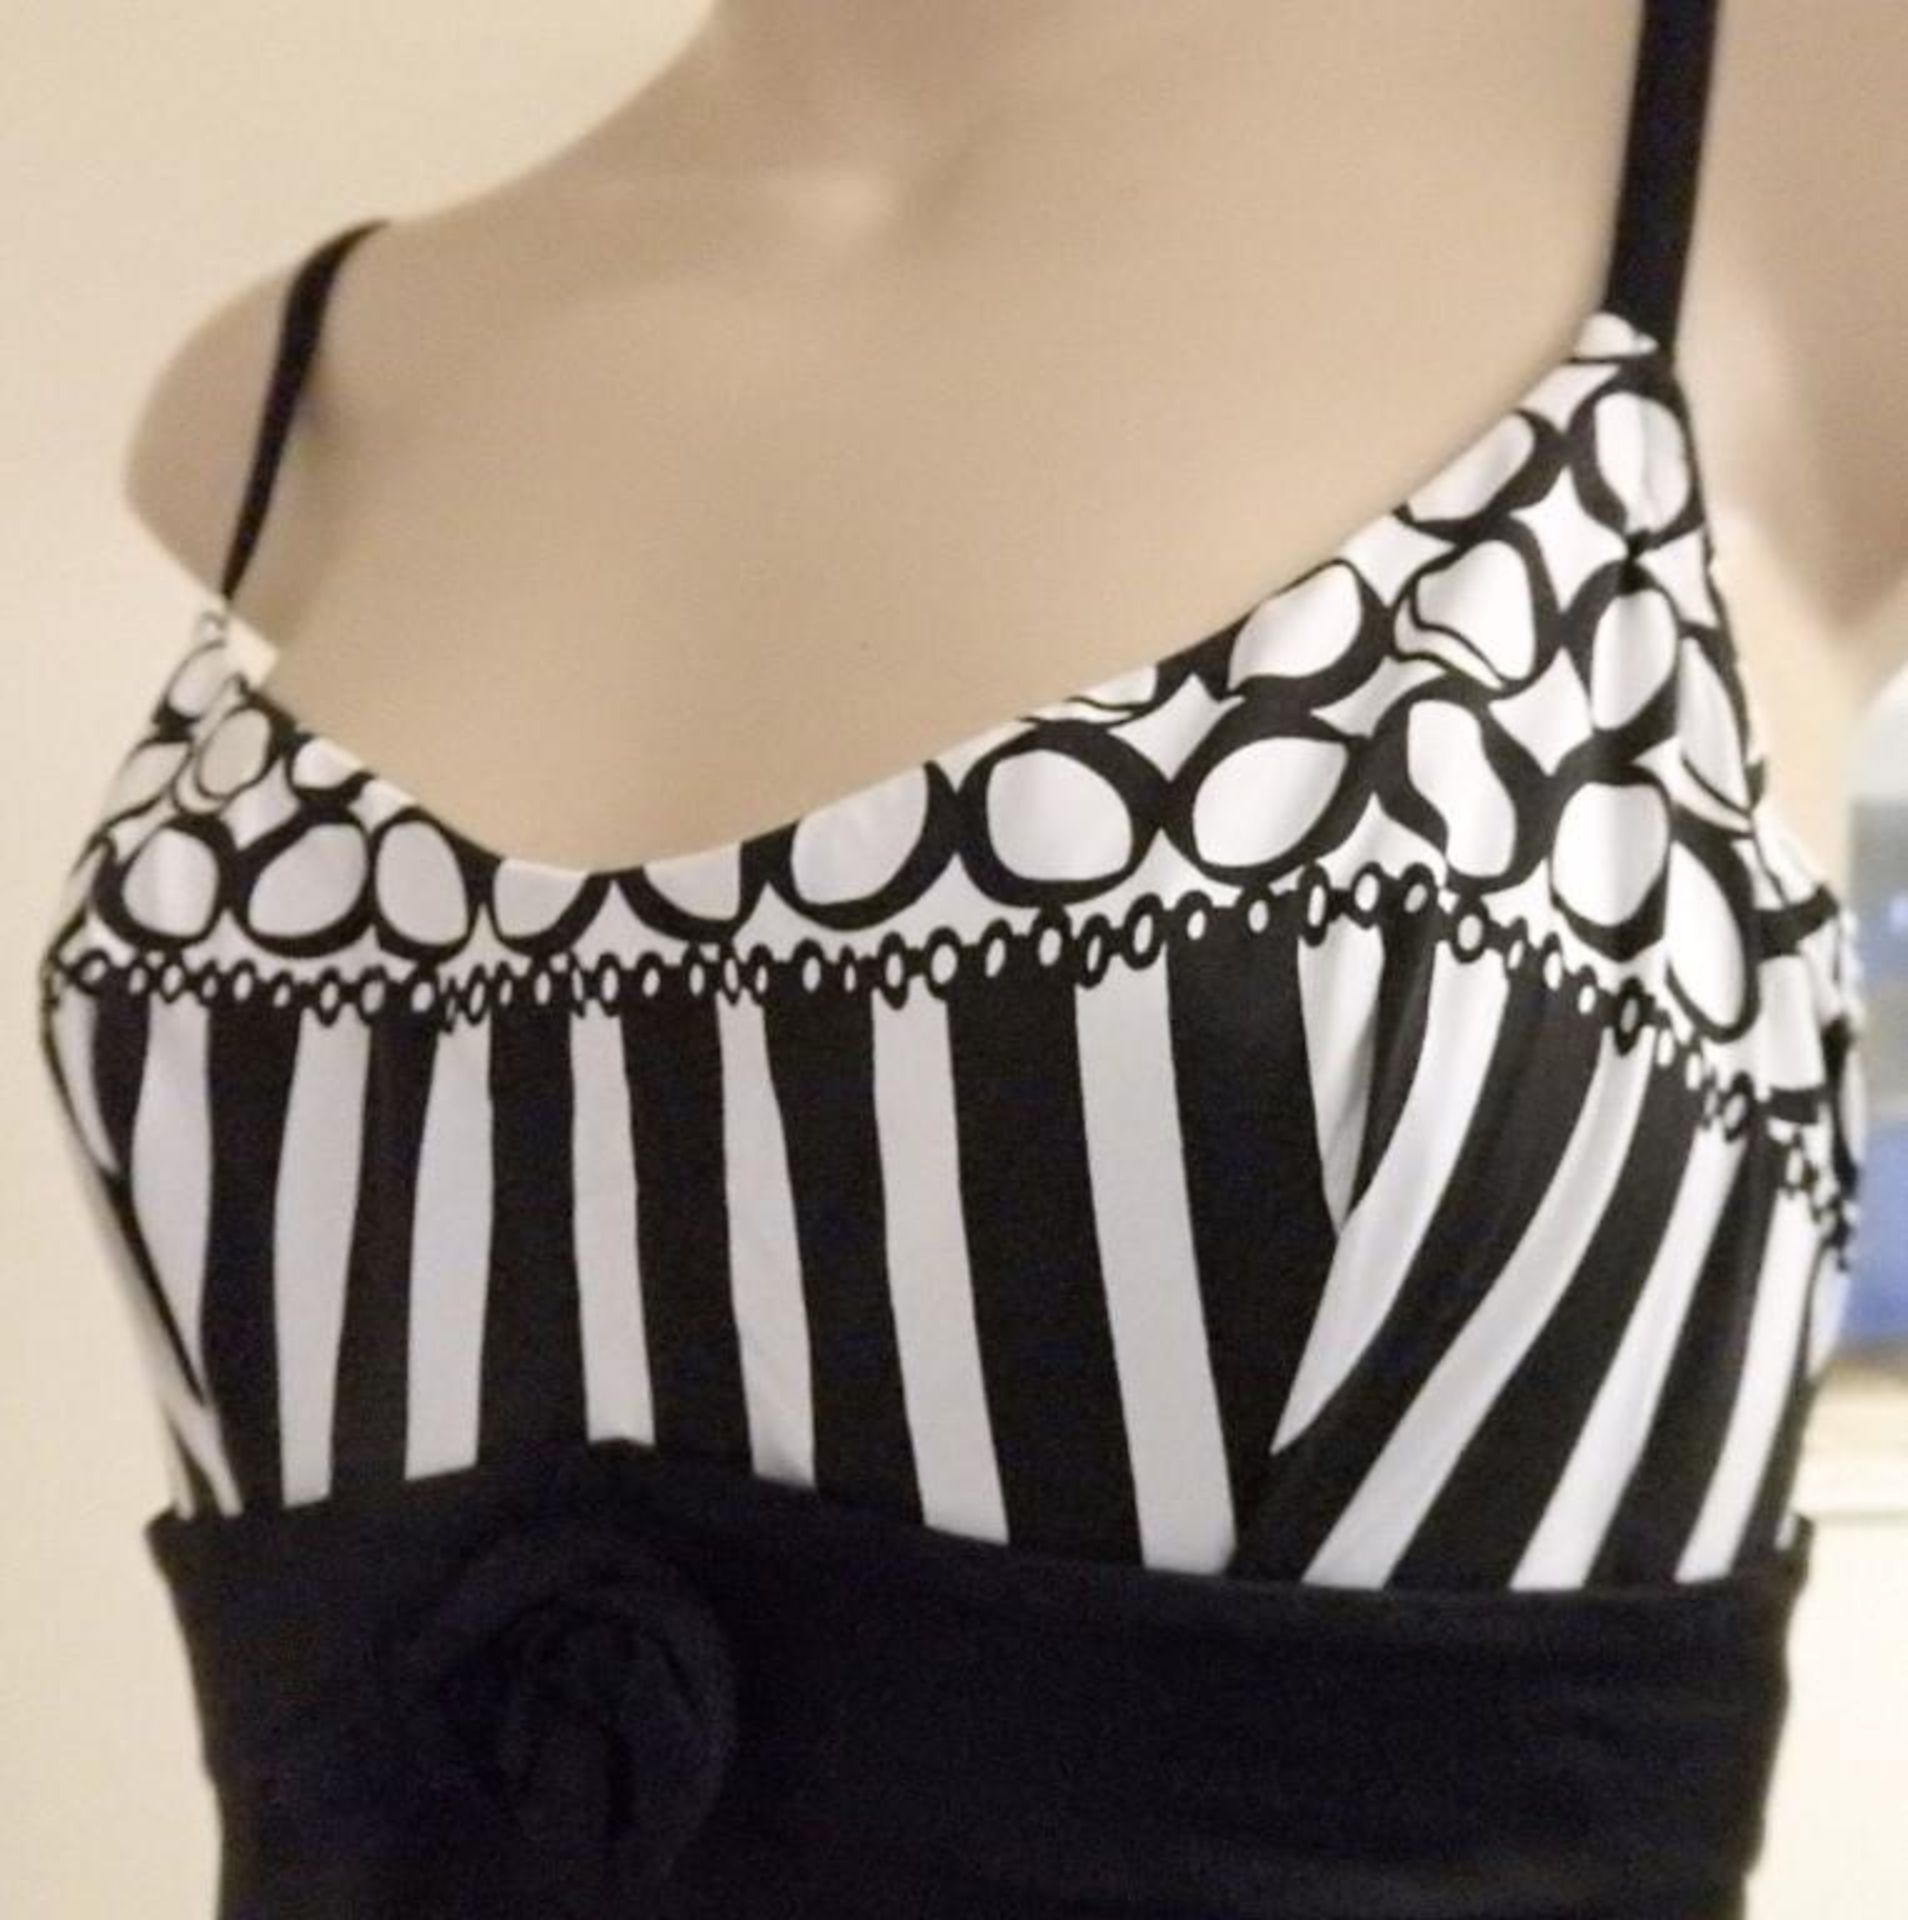 1 x Rasurel - Black/White patterned - Borneo Swimsuit - R20435 - Size 2C - UK 32 - Fr 85 - EU/Int 7 - Image 5 of 5